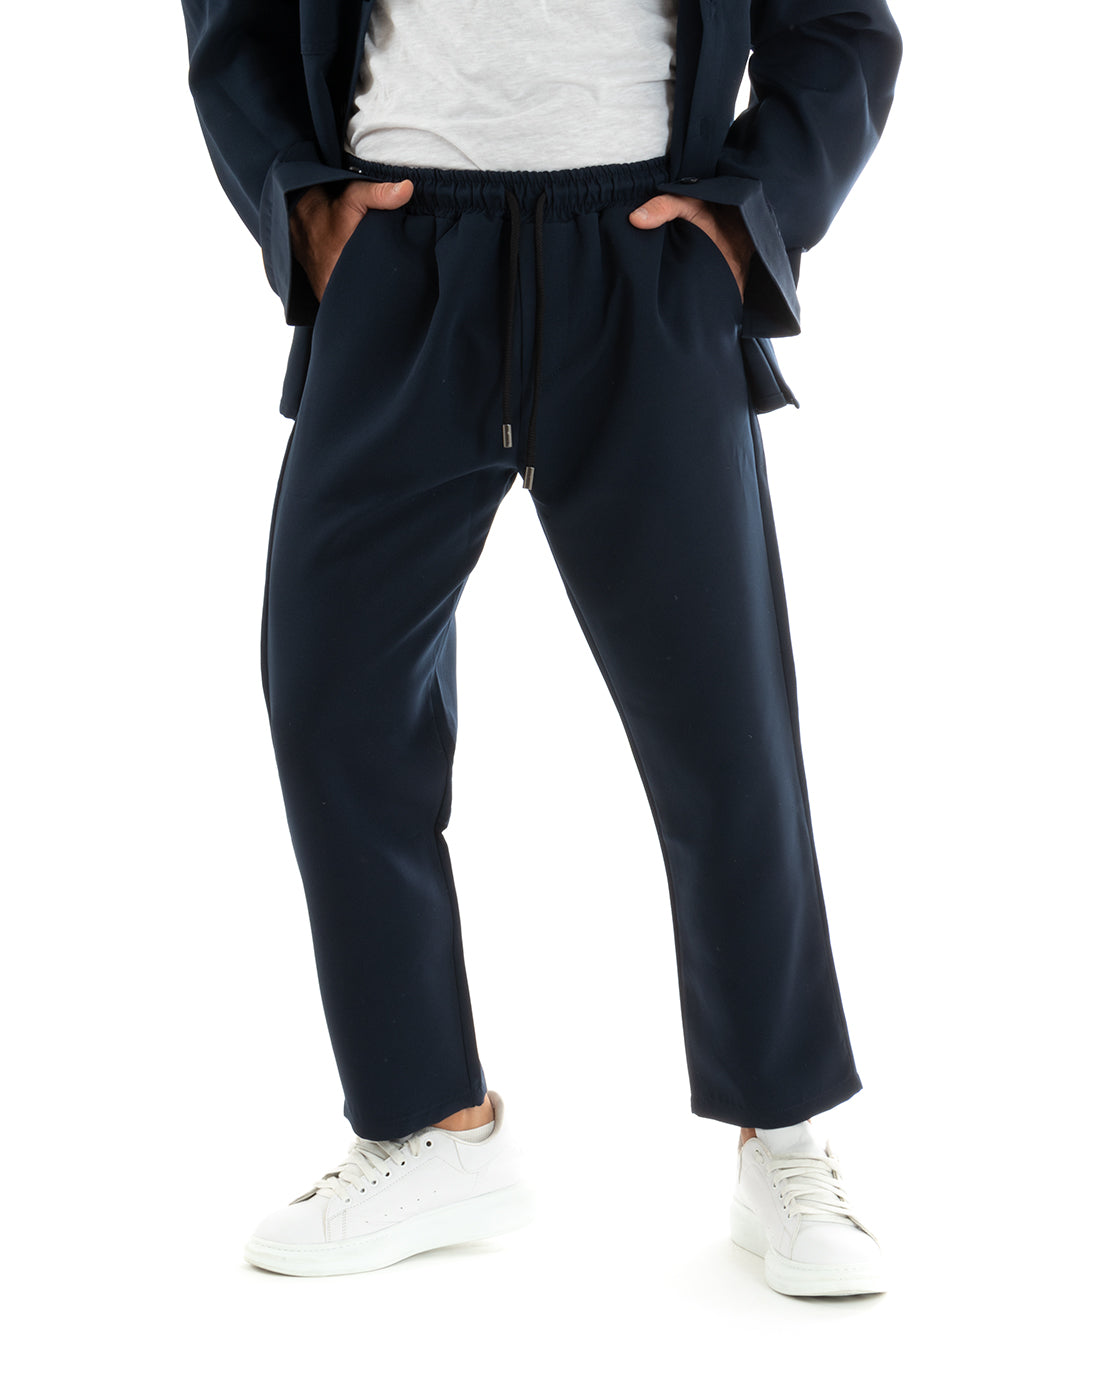 Completo Set Coordinato Uomo Viscosa Camicia Con Colletto Pantaloni Outfit Blu GIOSAL-OU2388A